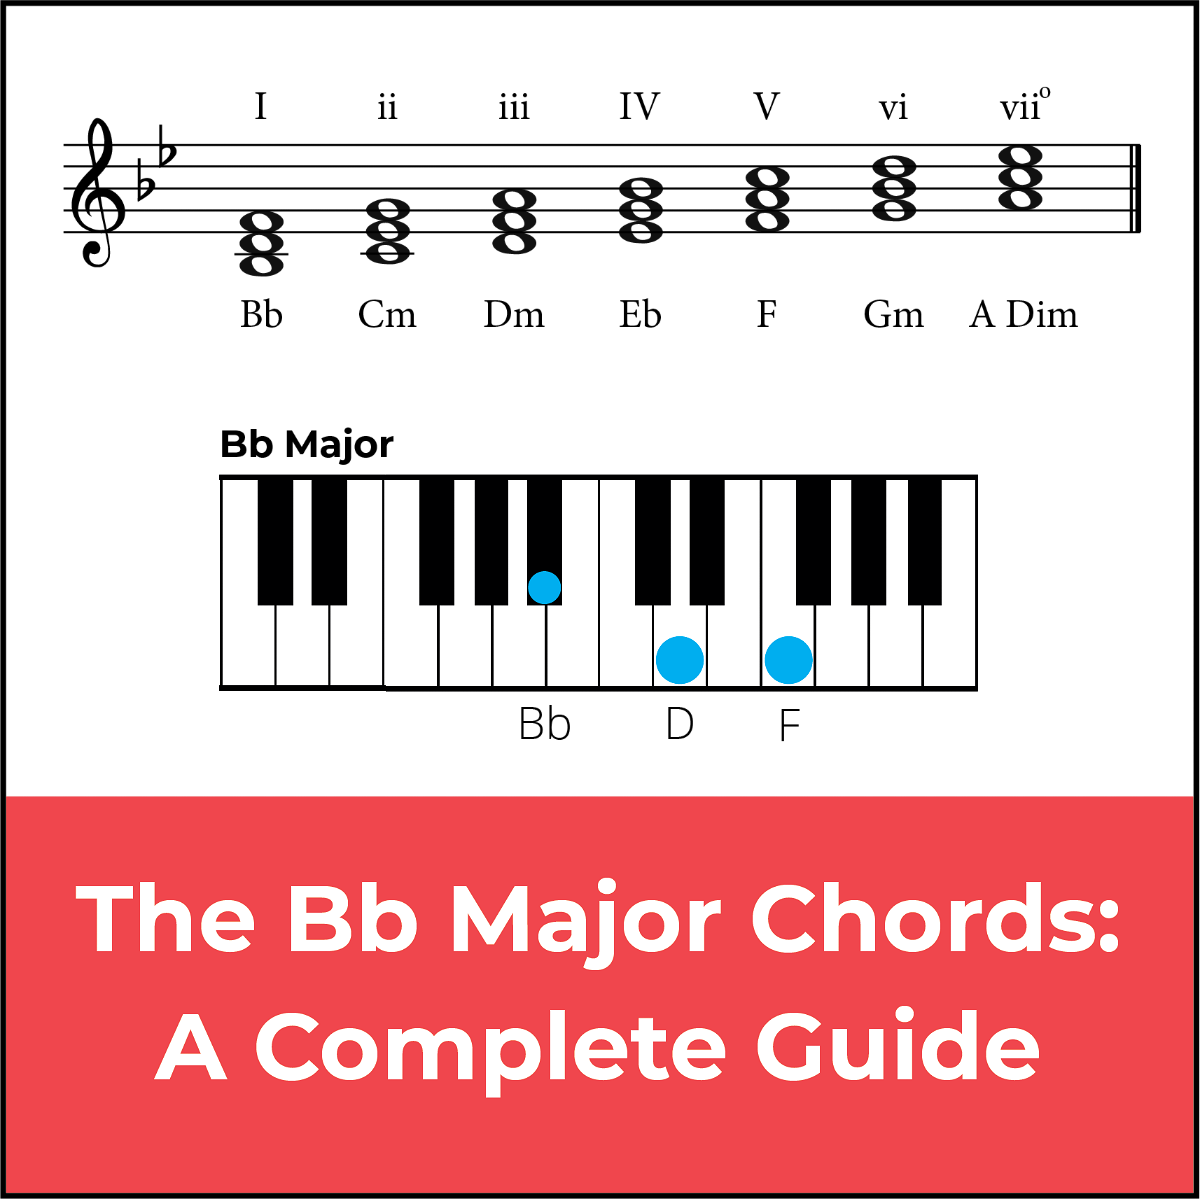 Bb/A, Bb/G, Bb/Eb, Bb/C (Bb slash chords)